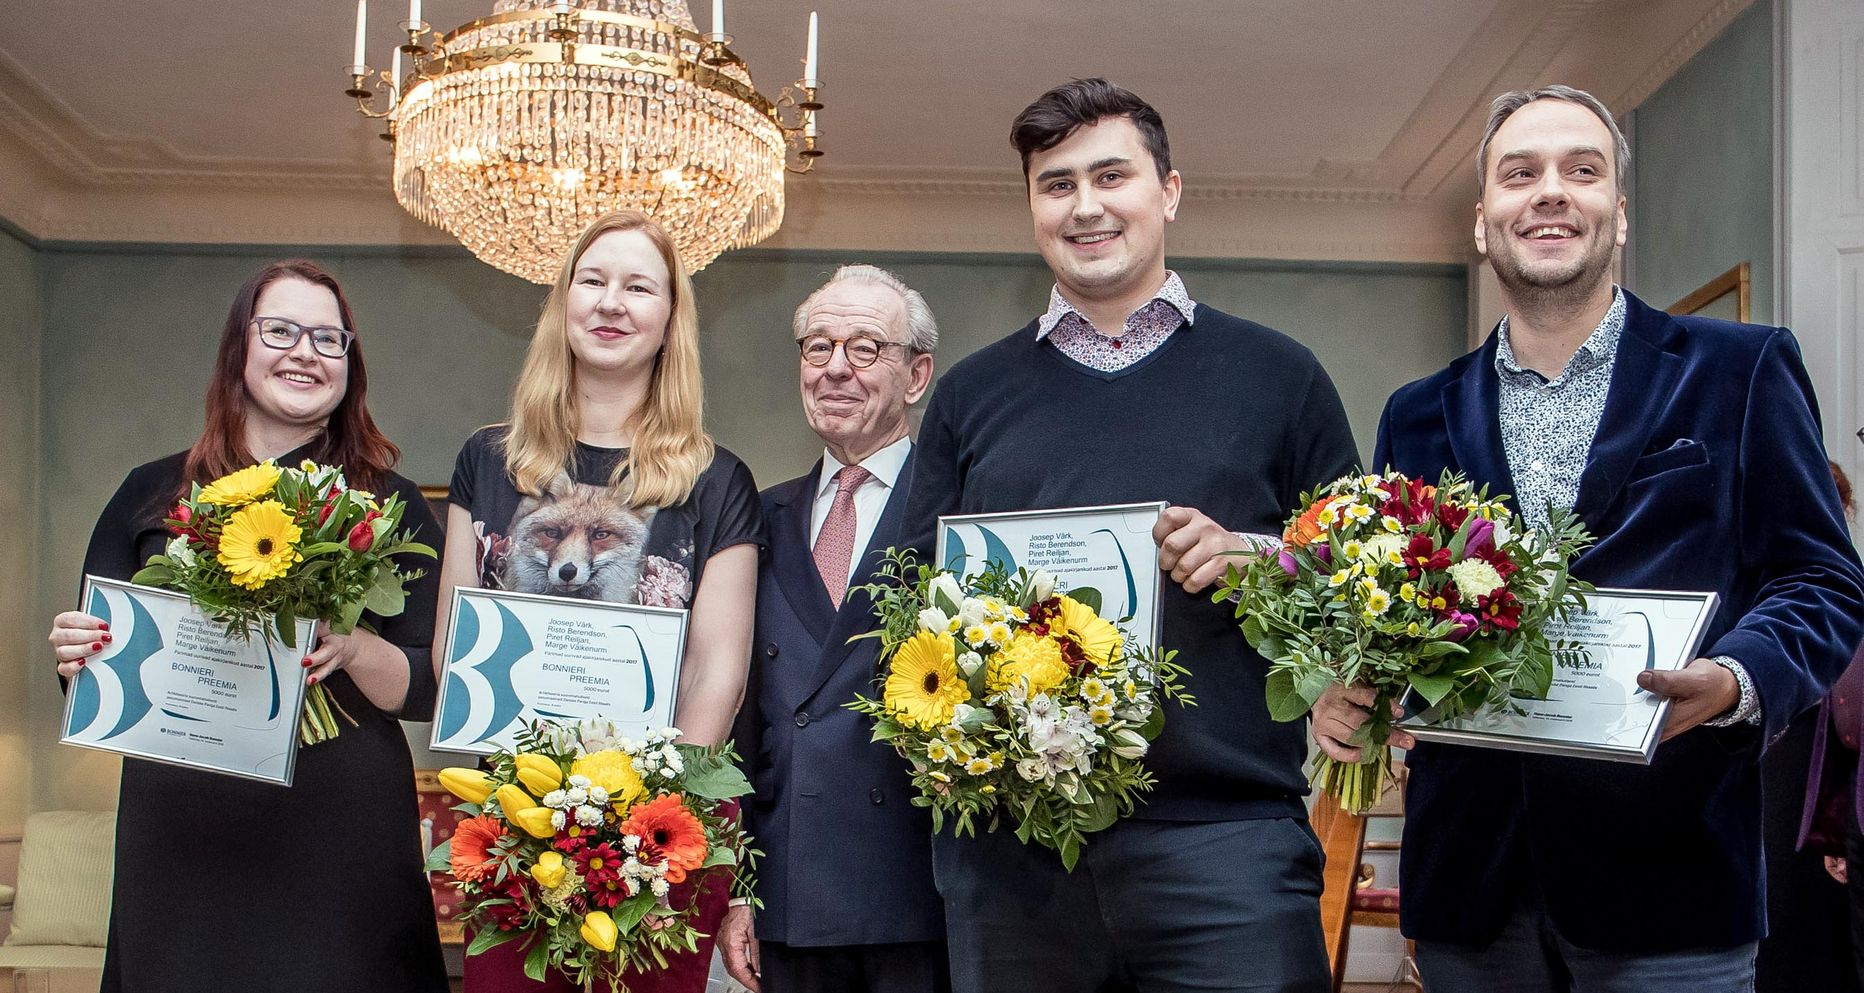 Bonnieri preemia laureaadid Marge Väikenurm ja Piret Reiljan Äripäevast ning Joosep Värk ja Risto Berendson Postimehest, nende vahel Rootsi meediakontserni esindaja Hans-Jacob Bonnier.